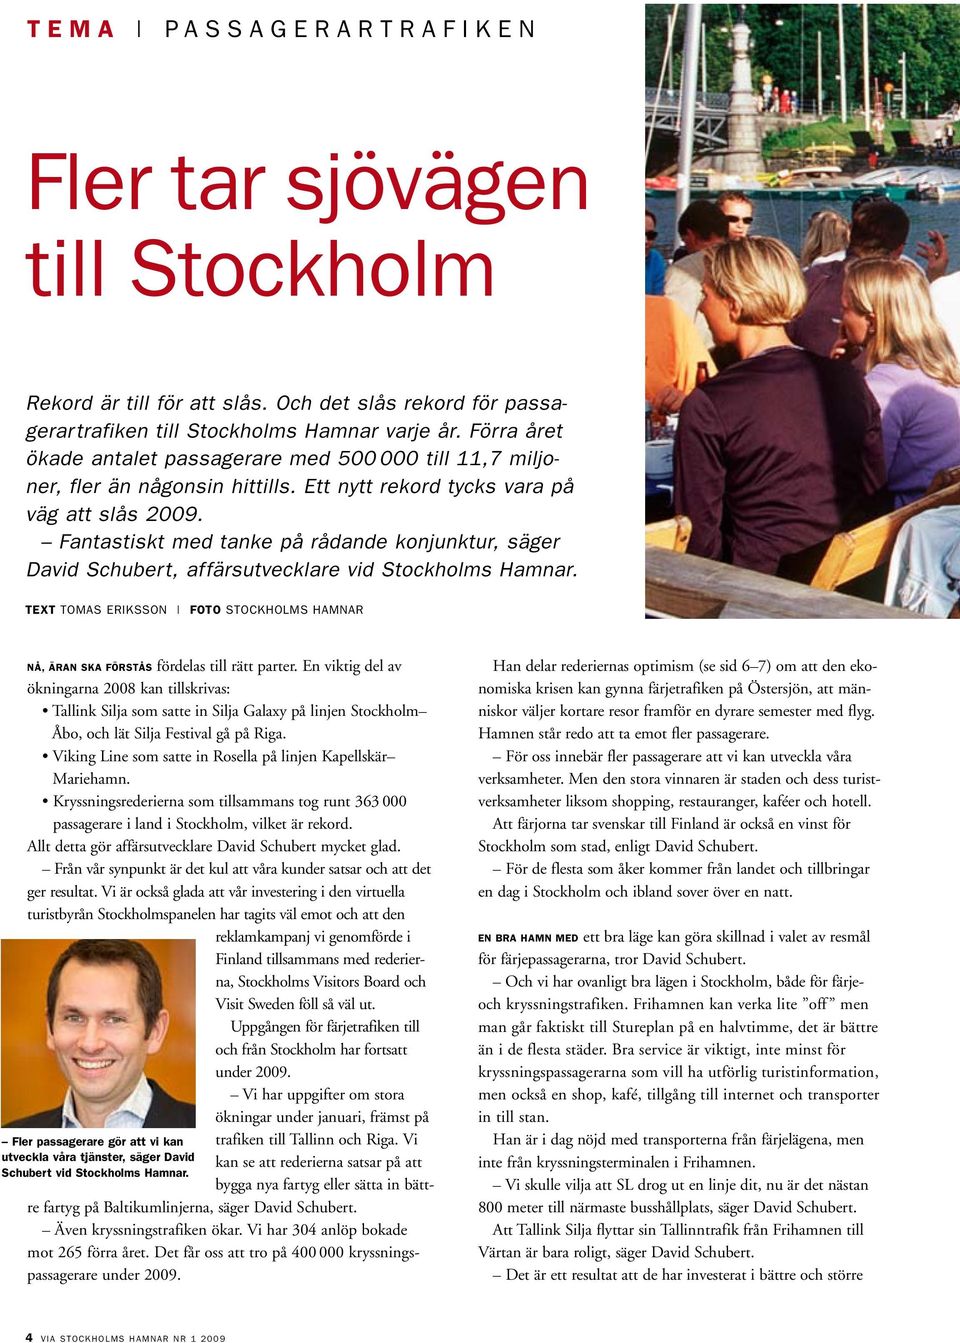 Fantastiskt med tanke på rådande konjunktur, säger David Schubert, affärsutvecklare vid Stockholms Hamnar. TEXT tomas eriksson FOTO stockholms hamnar Nå, äran ska förstås fördelas till rätt parter.